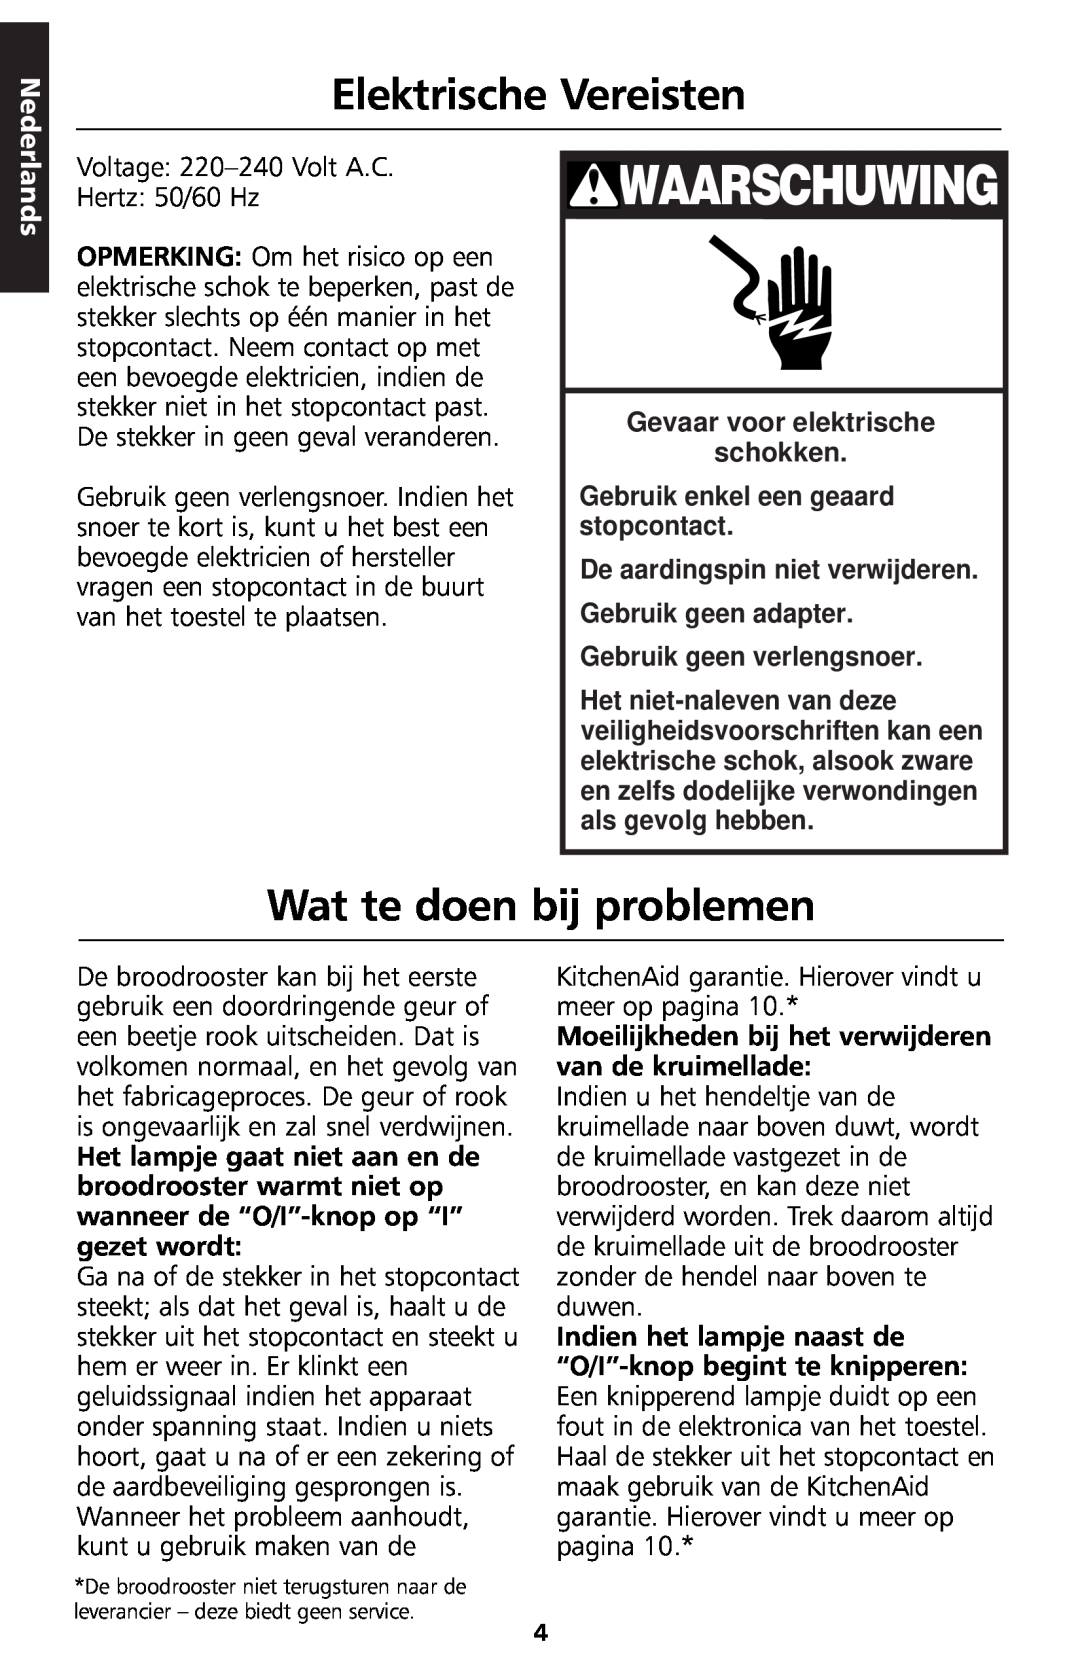 KitchenAid 5KTT890 manual Waarschuwing, Elektrische Vereisten, Wat te doen bij problemen, Nederlands 